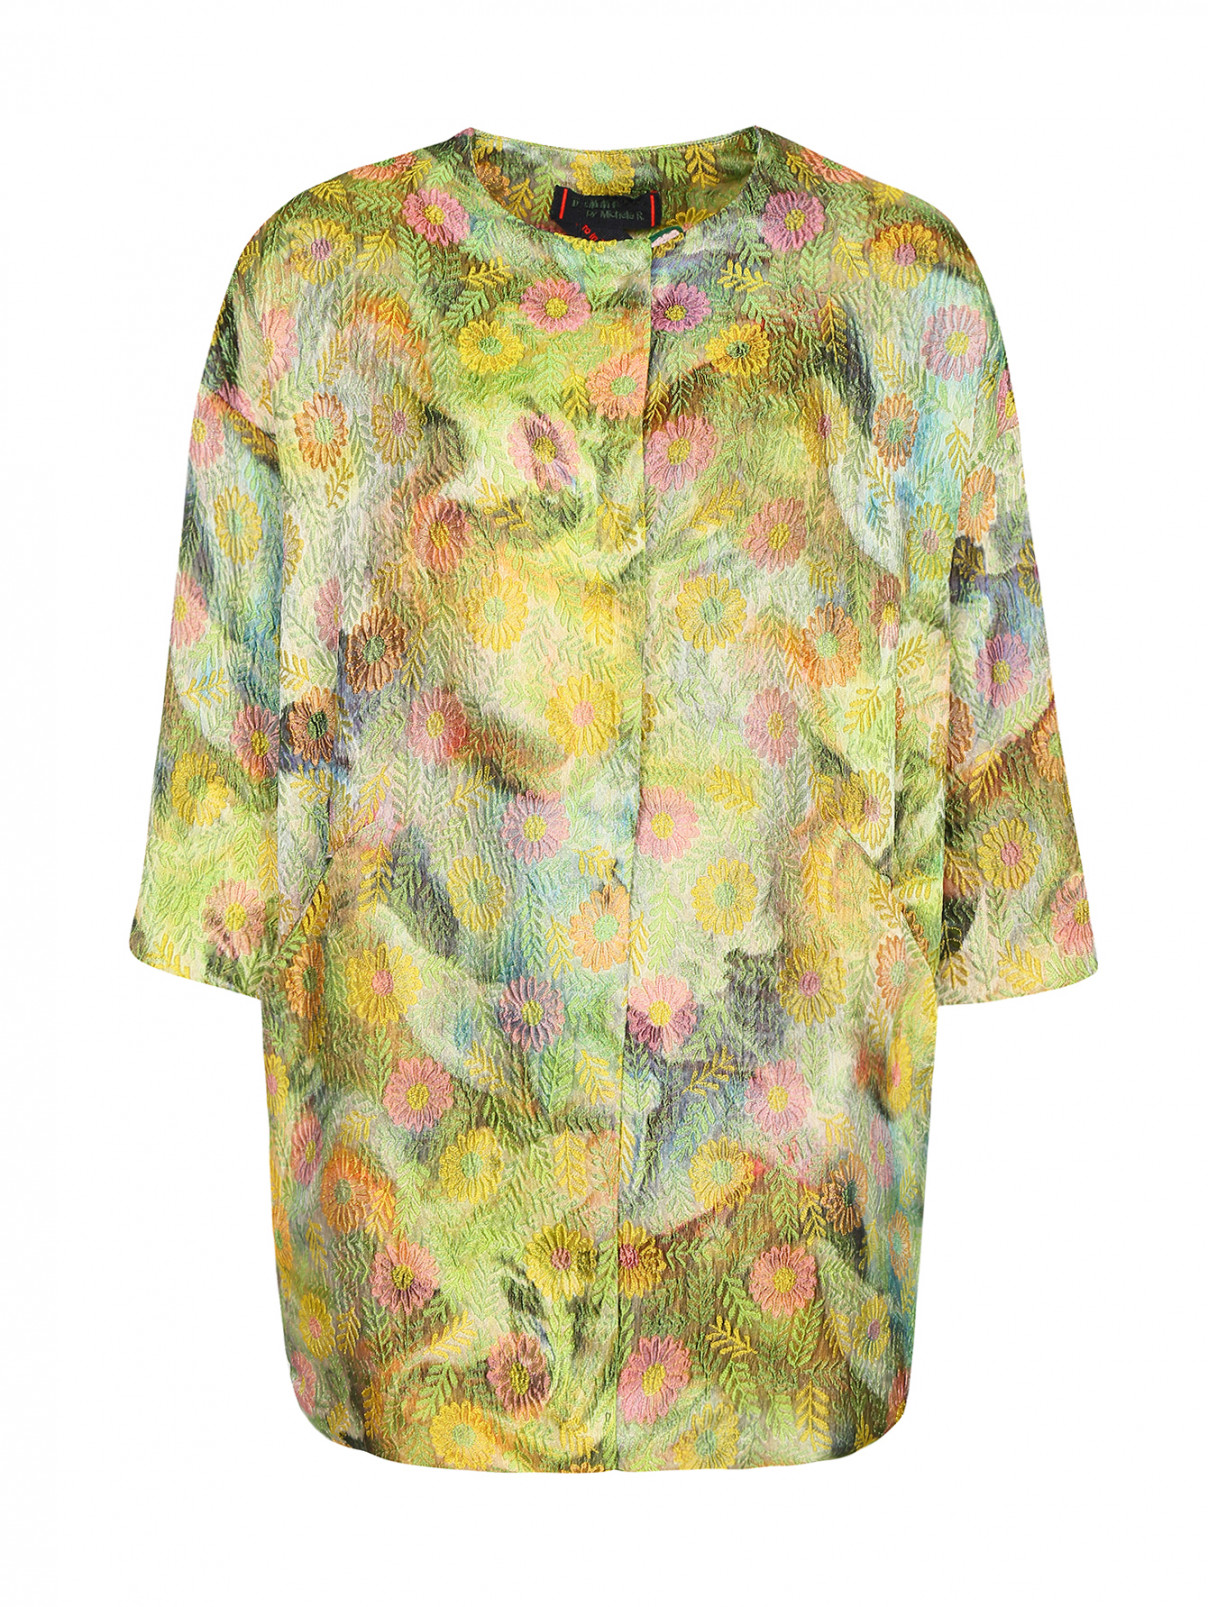 Пальто с цветочным узором и боковыми карманами Femme by Michele R.  –  Общий вид  – Цвет:  Узор